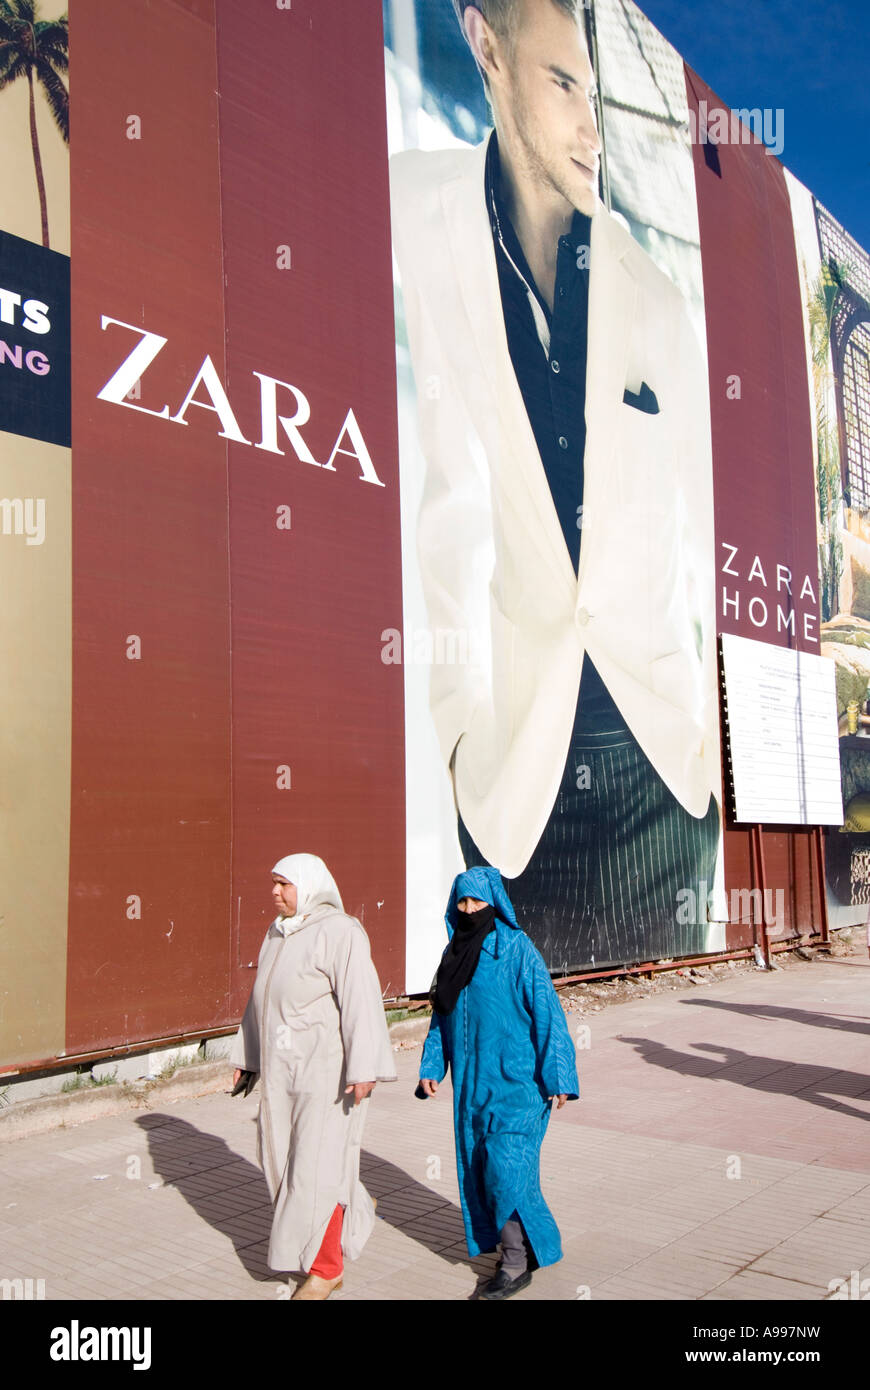 Cartel publicitario de una tienda de la cadena Zara ropa europea en Marruecos  Marrakech Gueliz Fotografía de stock - Alamy